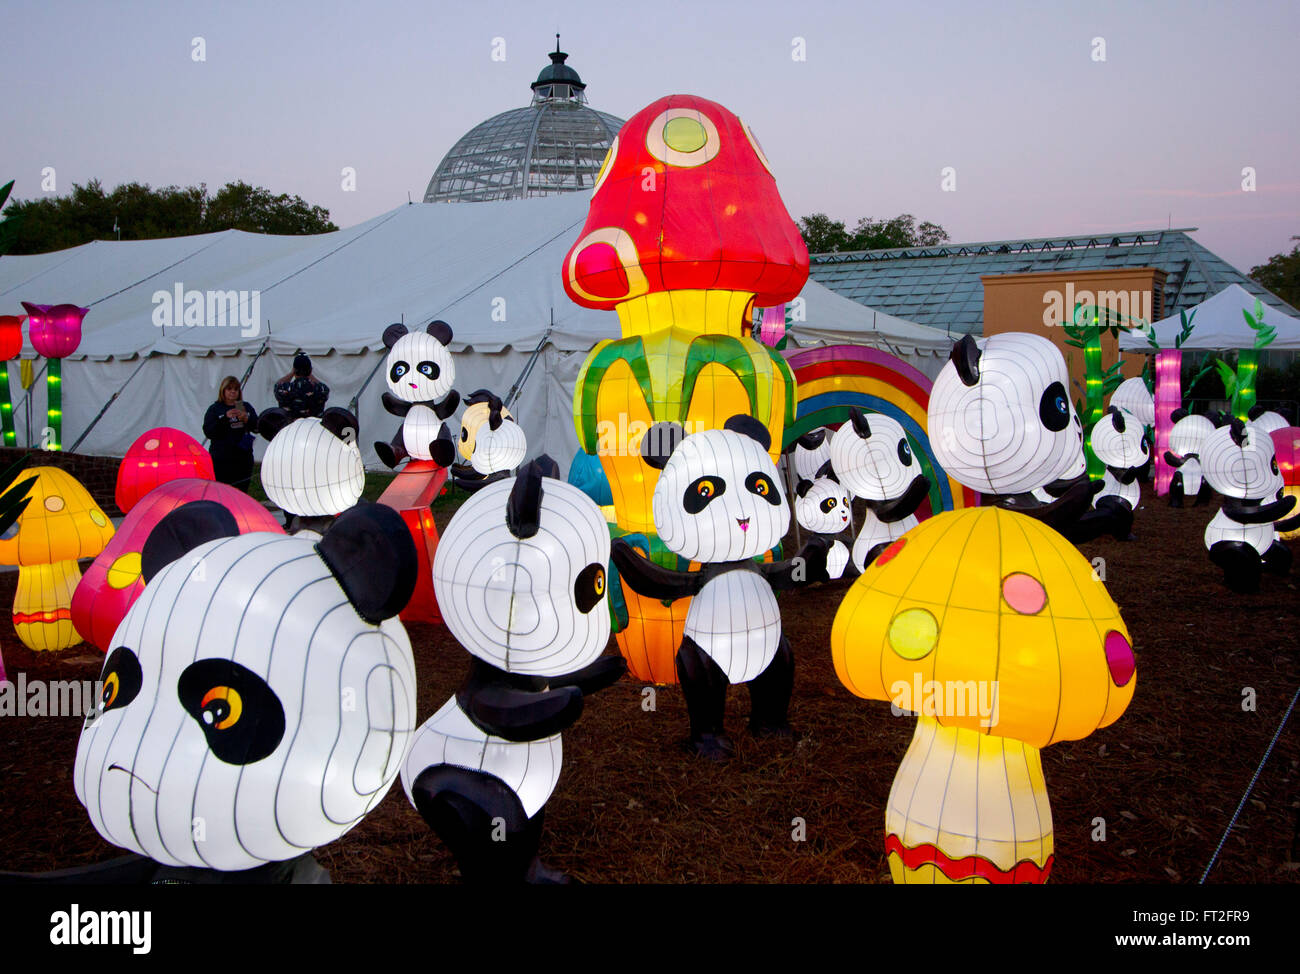 Ein Spielplatz der glühenden Pandas und Pilze in New Orleans City Park China Lights aufweisen, 2016. Stockfoto